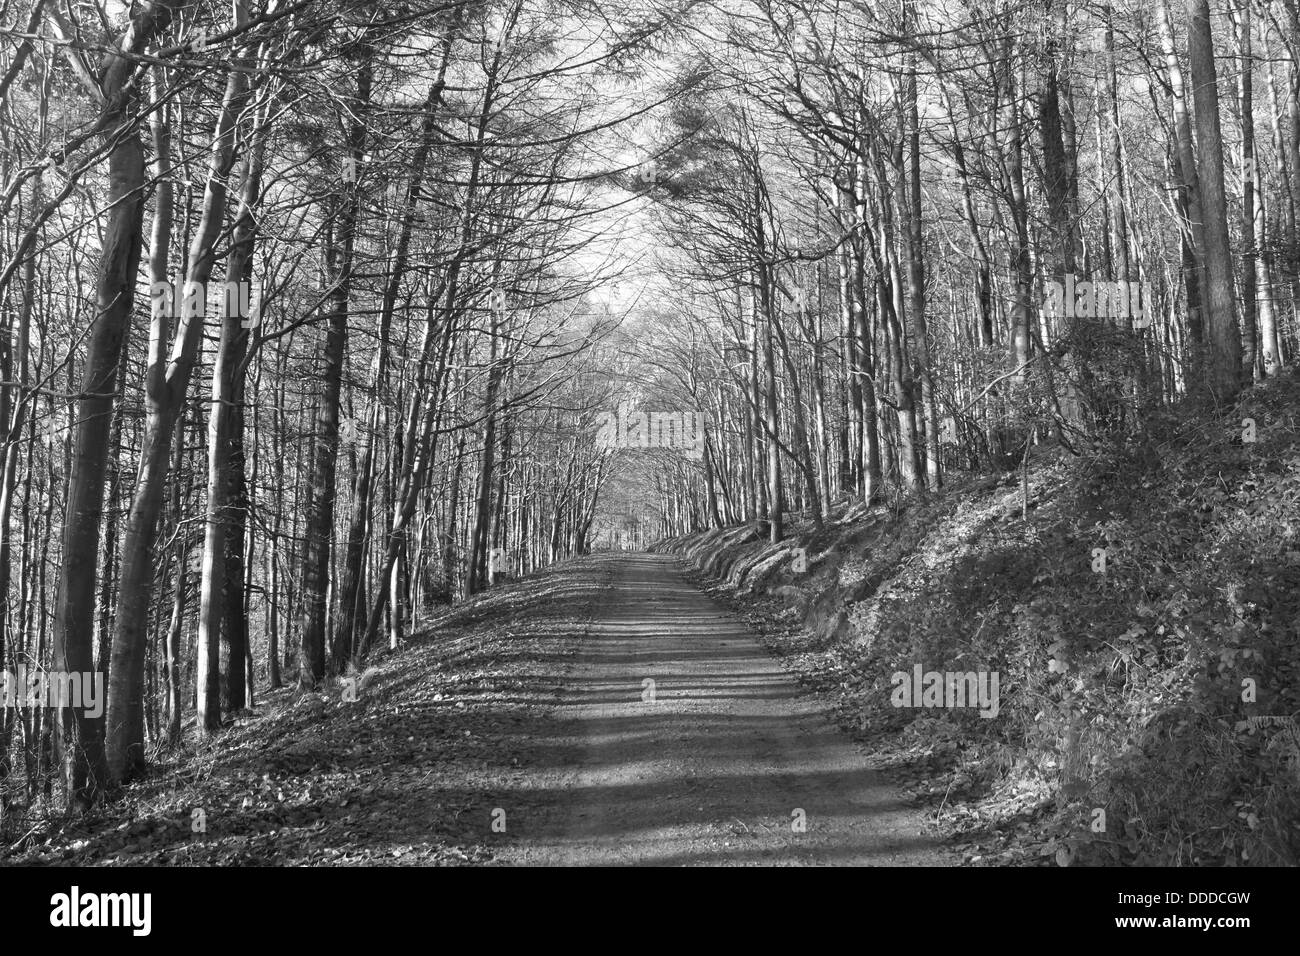 Tunel de árboles, Wicklow, Irlanda Foto de stock